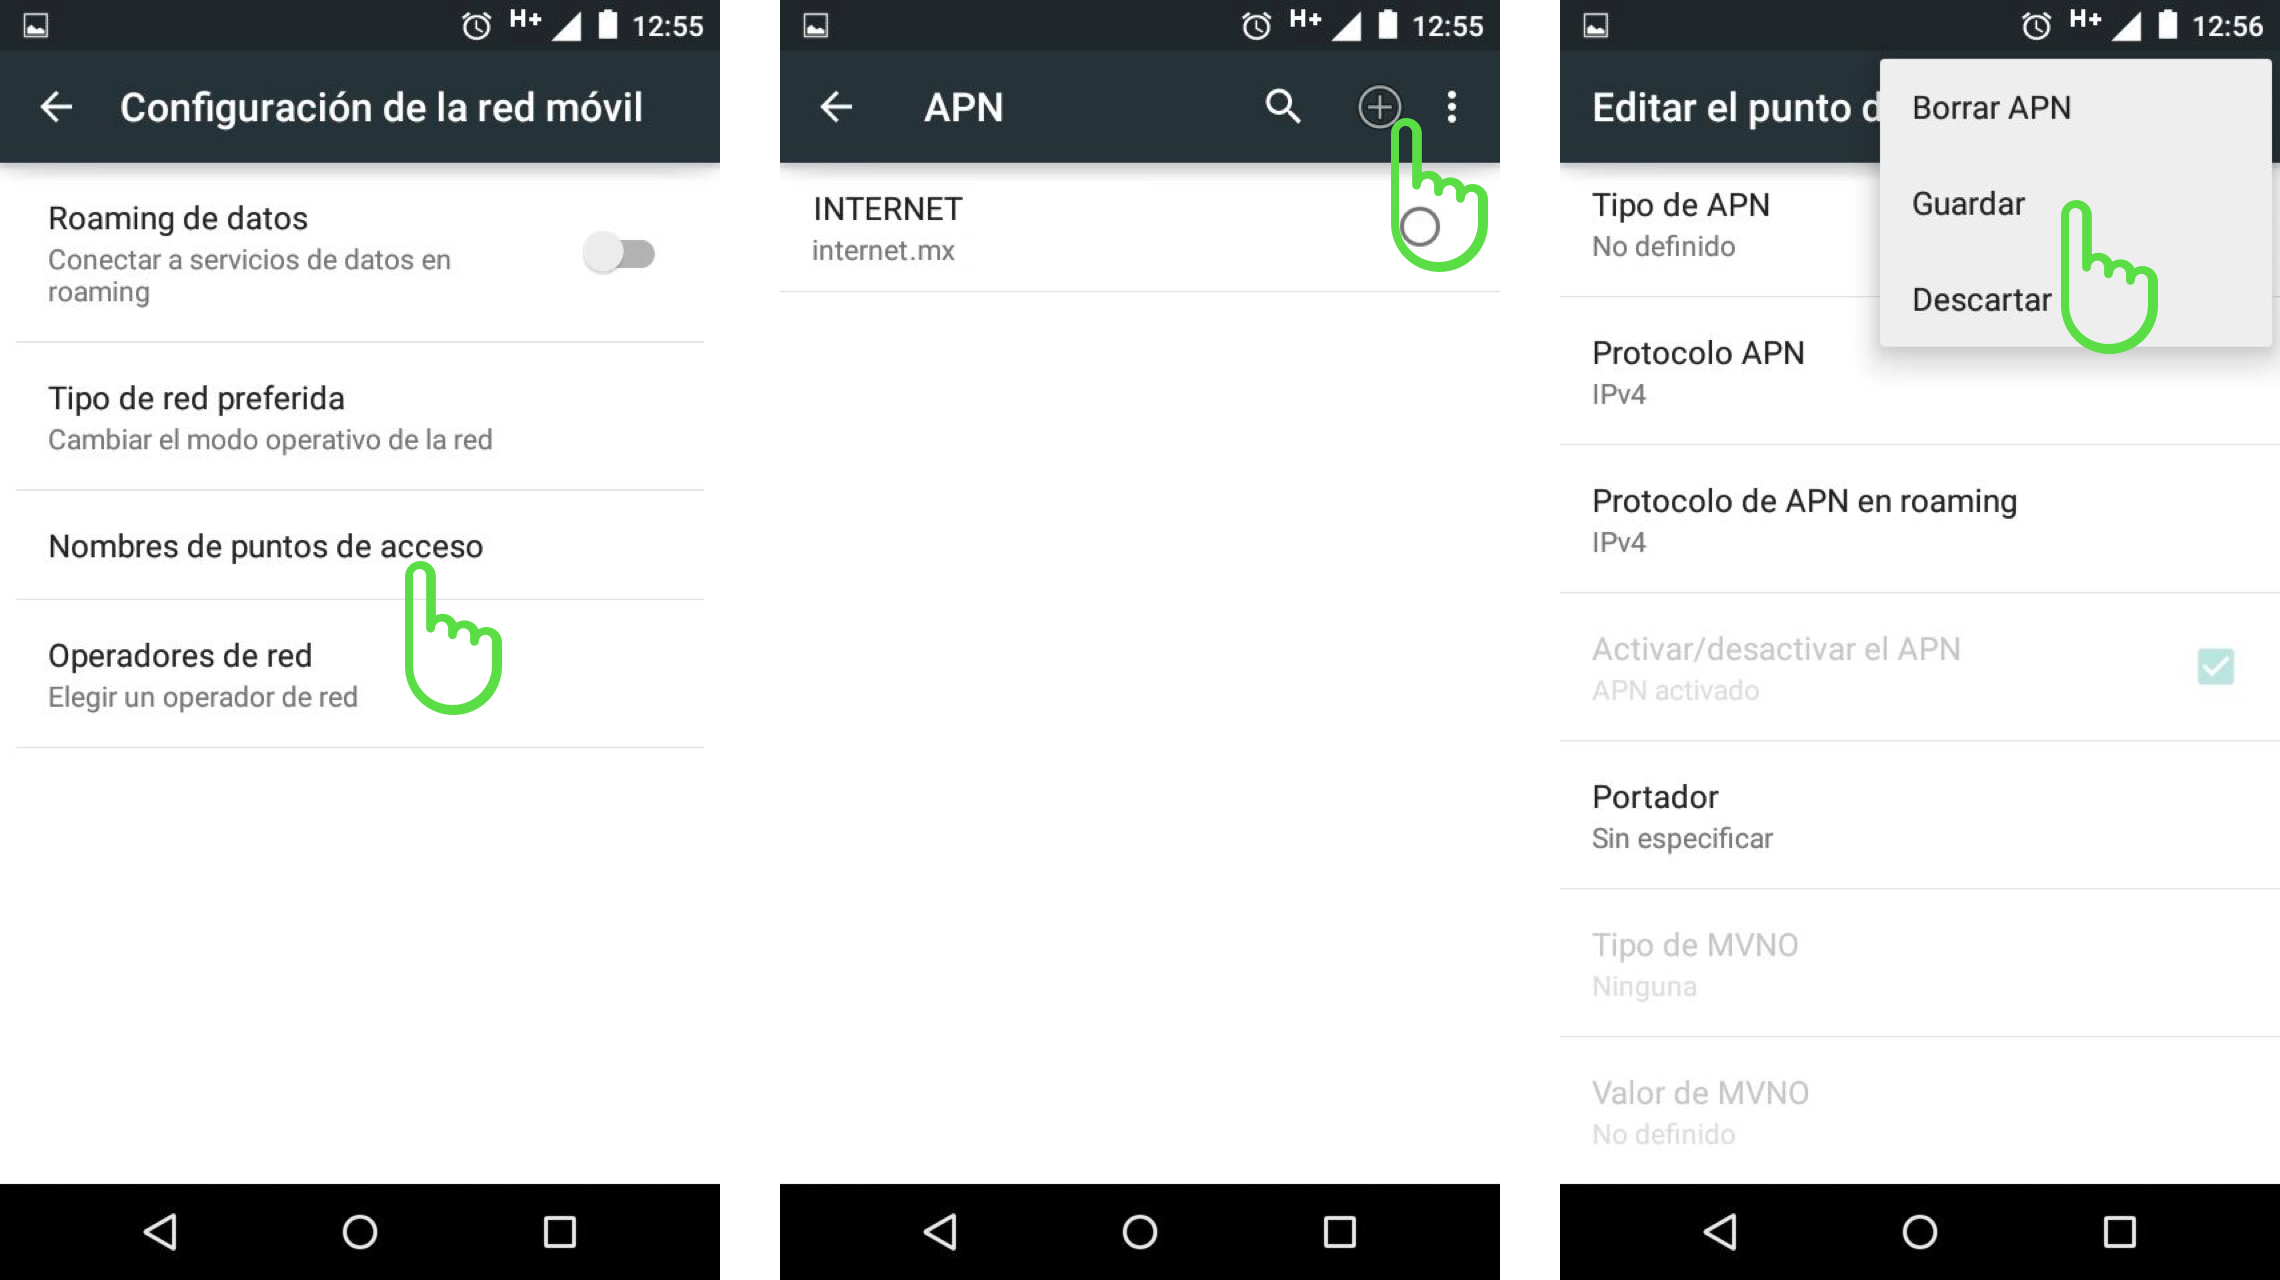 Imagén configuración APN en Android